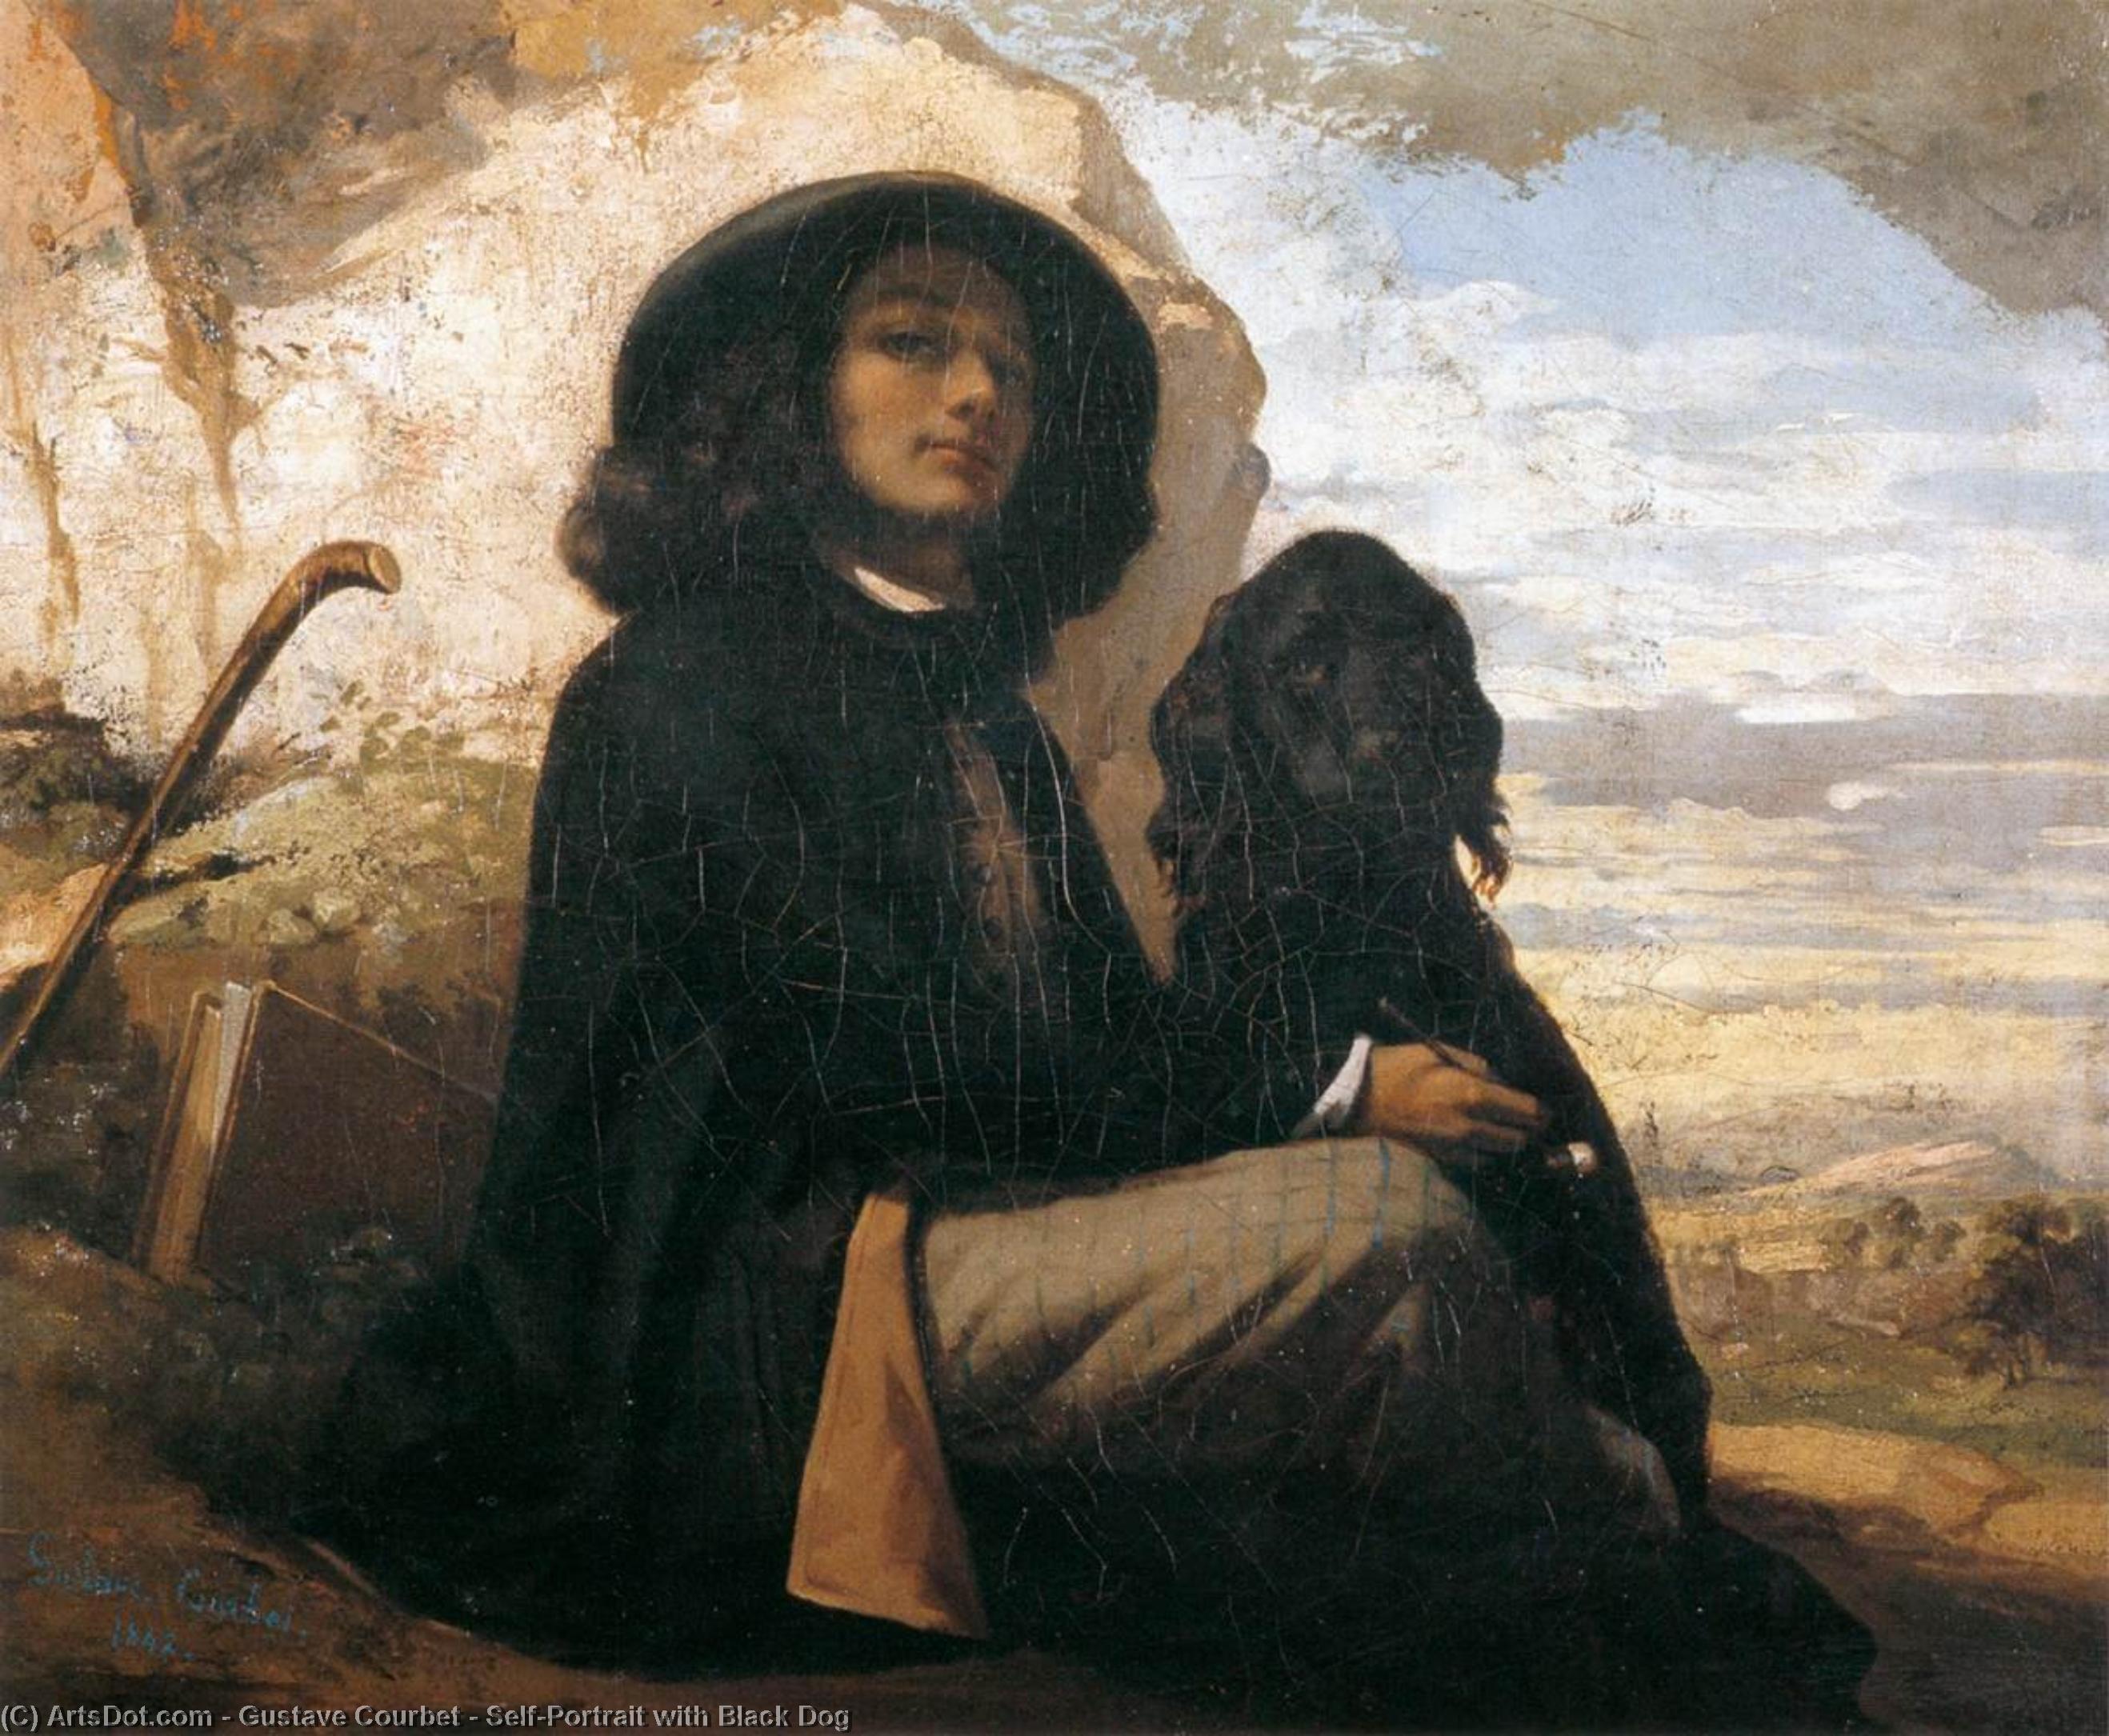 Acheter Reproductions D'art De Musée Autoportrait avec chien noir, 1842 de Gustave Courbet (1819-1877, France) | ArtsDot.com